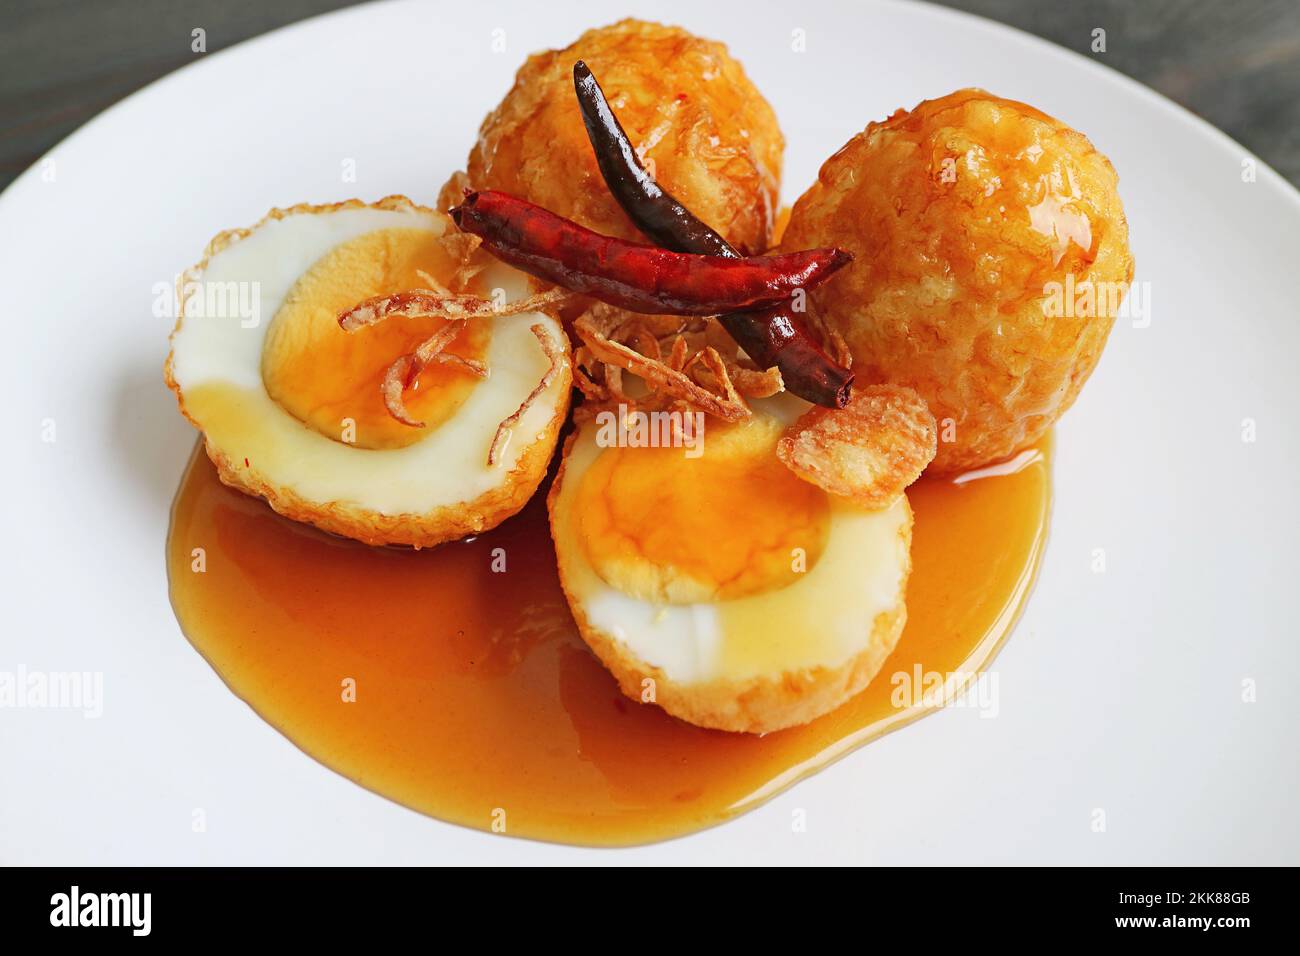 Kai Look Keuy oder Son in Law Eggs, frittierte hart gekochte Eier mit aromatischer Tamarindensauce Stockfoto